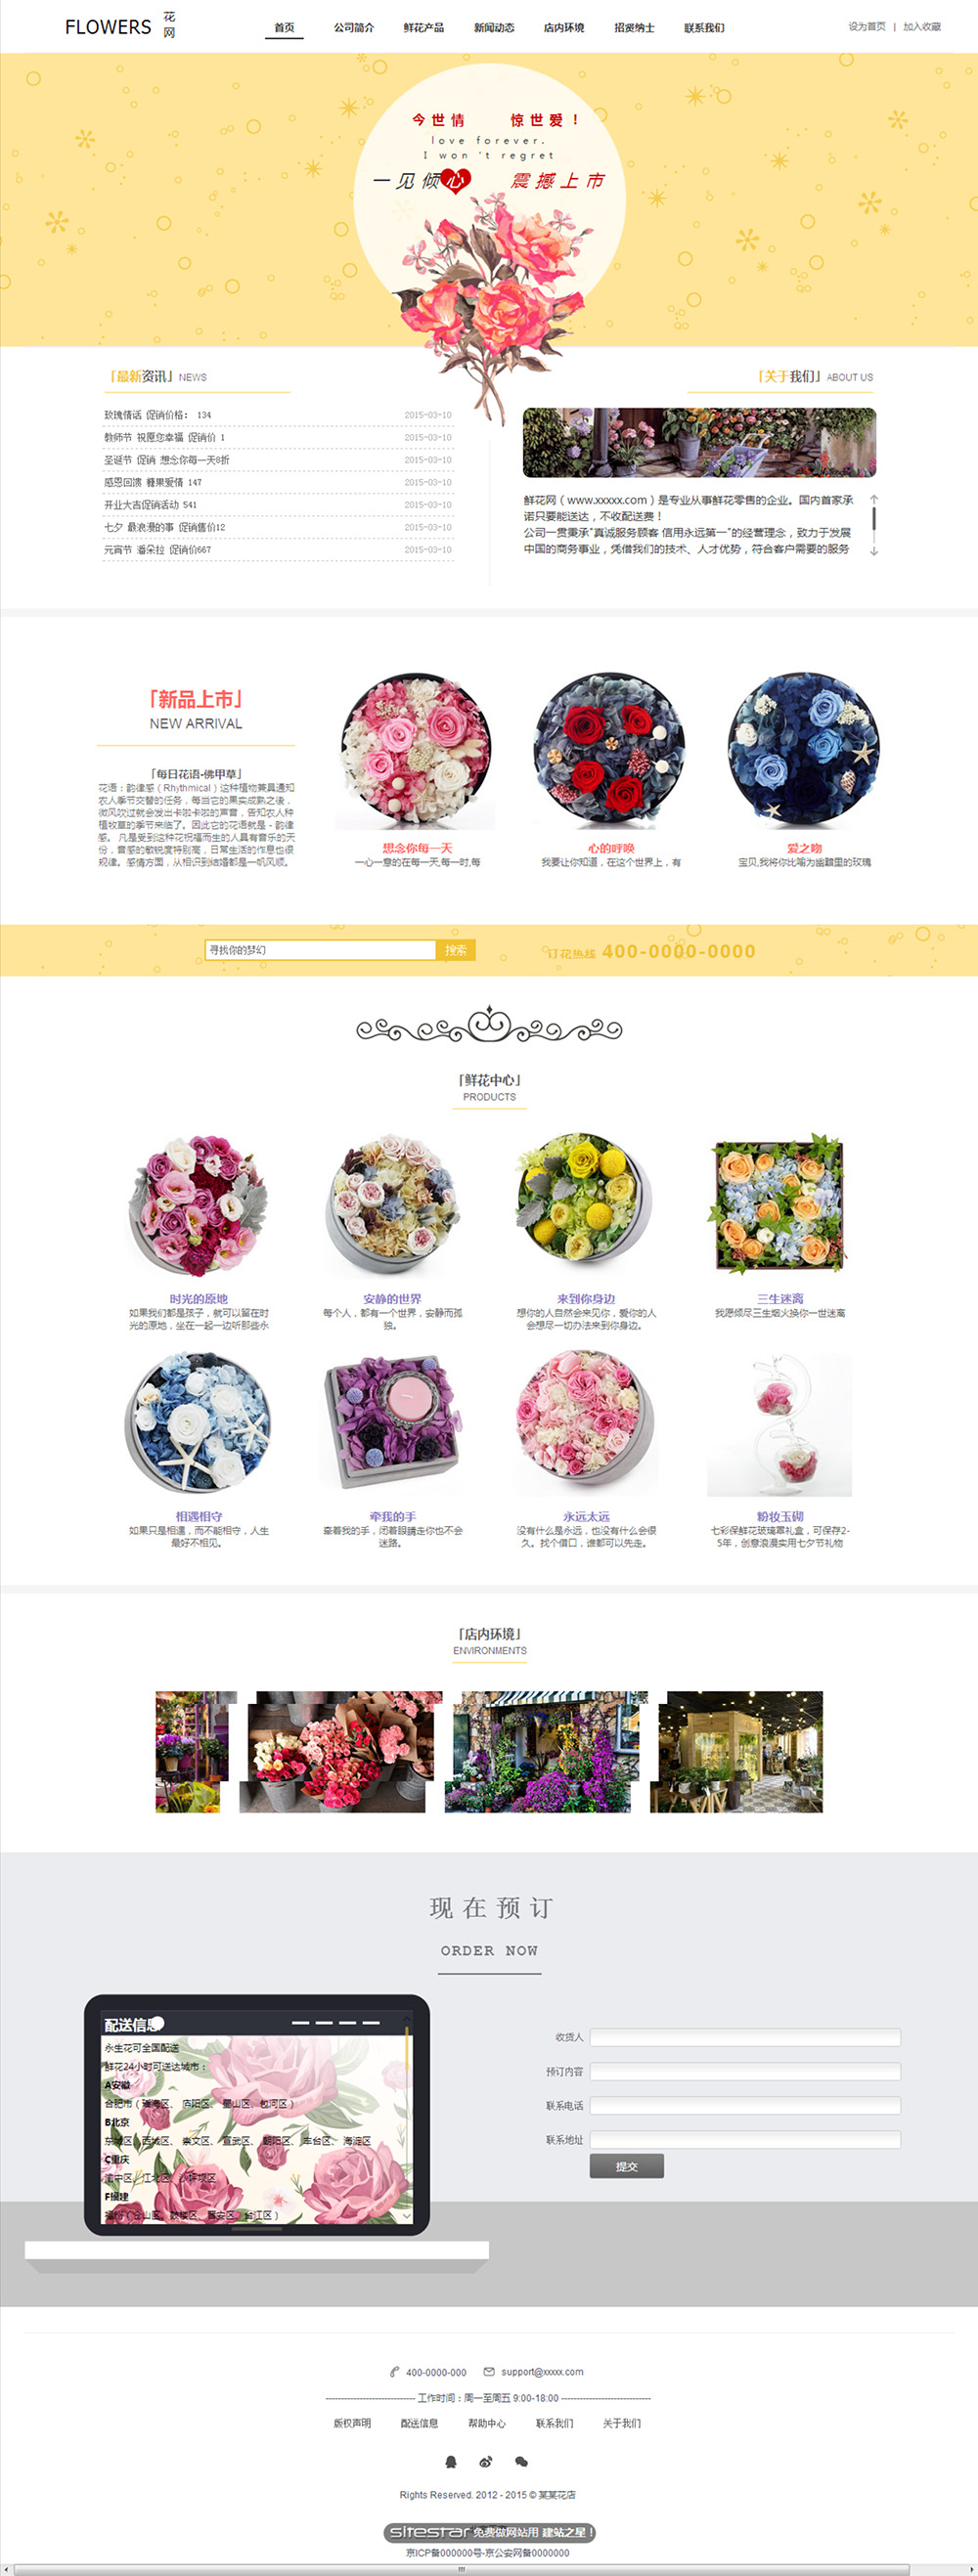 企业网站精美模板-flowers-53